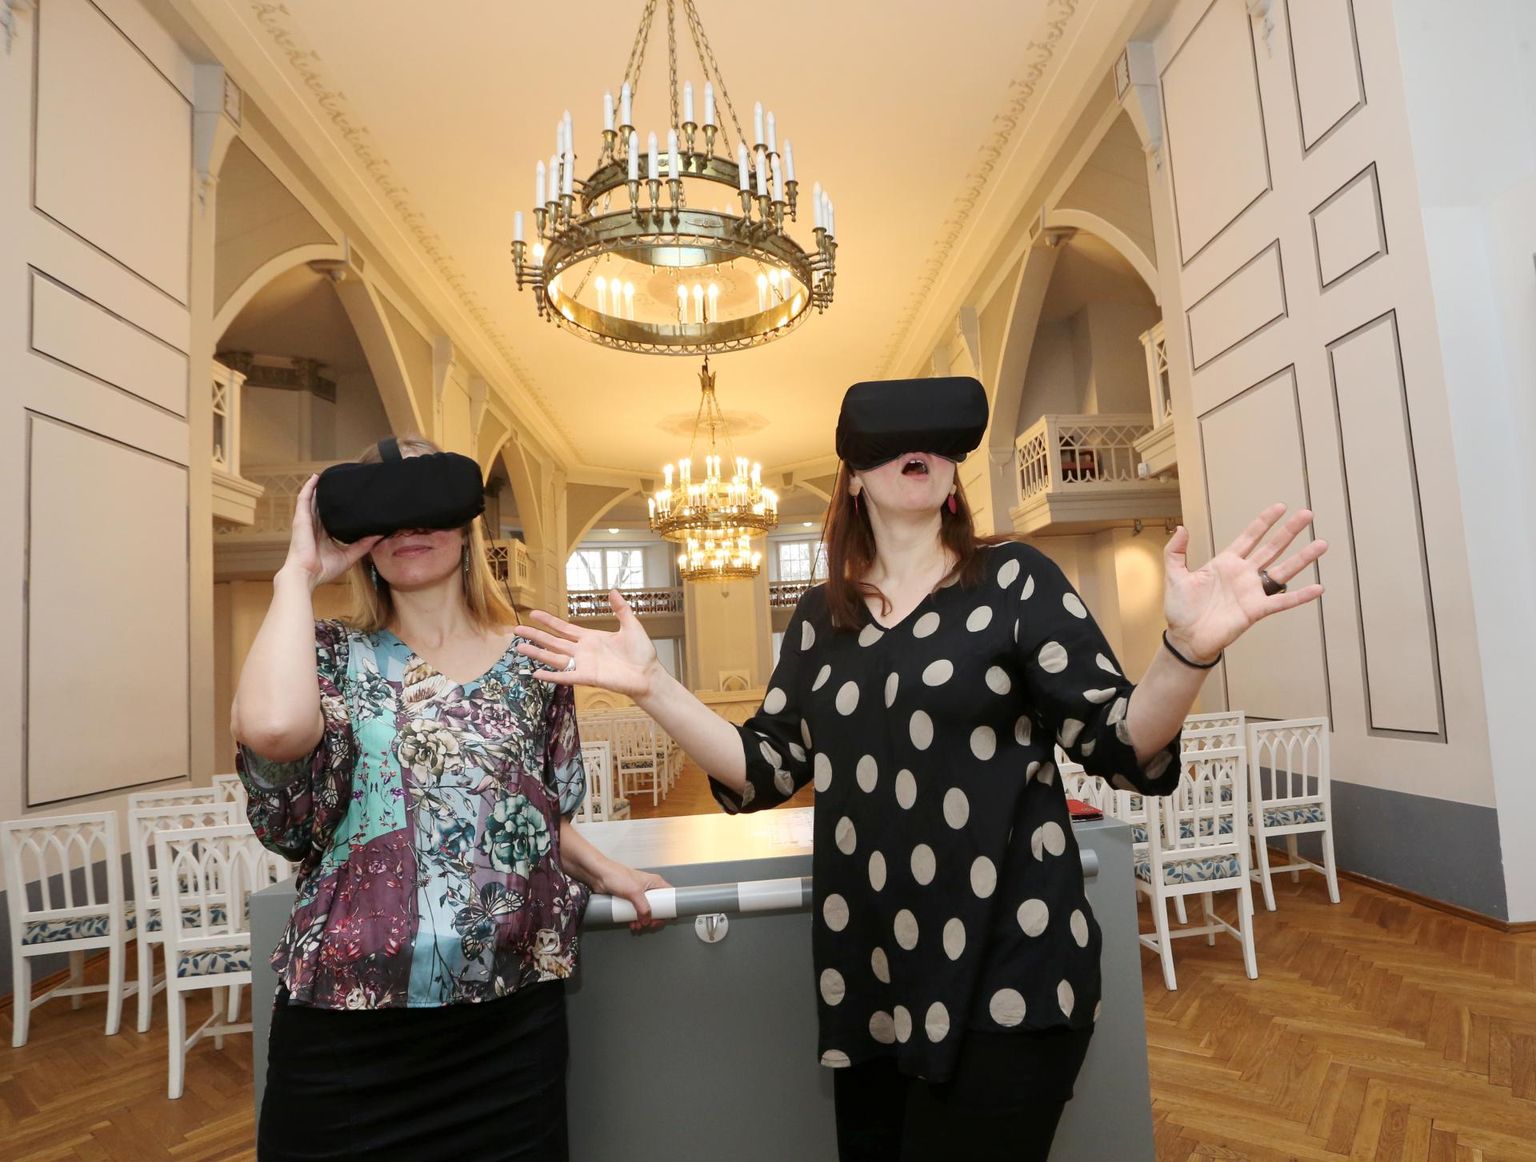 Tartu ülikooli muuseumi direktor Mariann Raisma (paremal) ja haridusvaldkonna juht Tiiu Kreegipuu üllatuvad virtuaalreaalsuse prille pähe pannes avanevast vaatepildist iga kord, mil seda näevad.